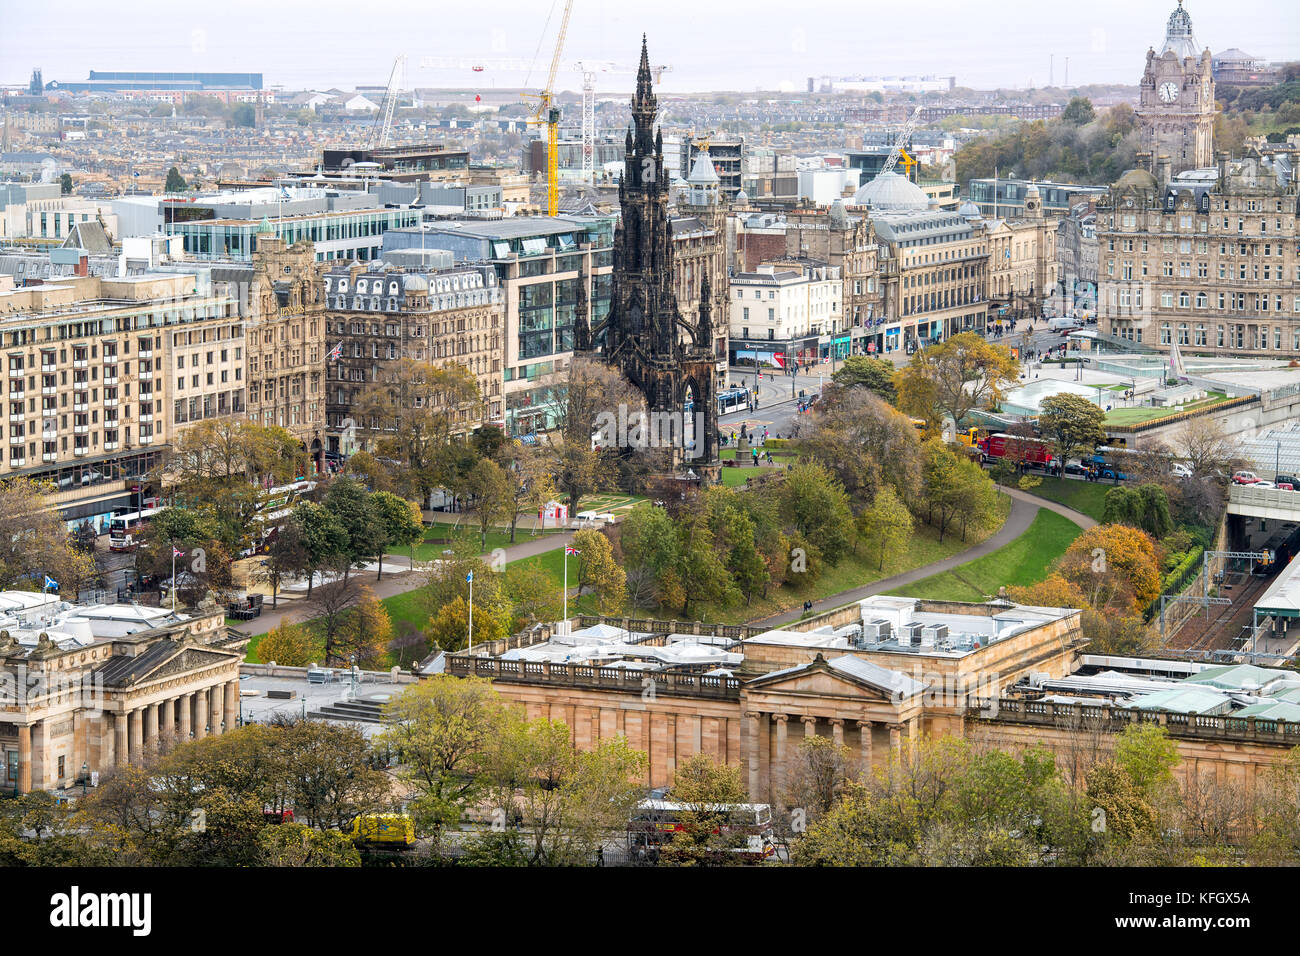 Edimburgo - Ciudad Nueva con el Firth of Forth en el fondo,y el Monumento a Scott en el primer plano del castillo de Edimburgo Foto de stock